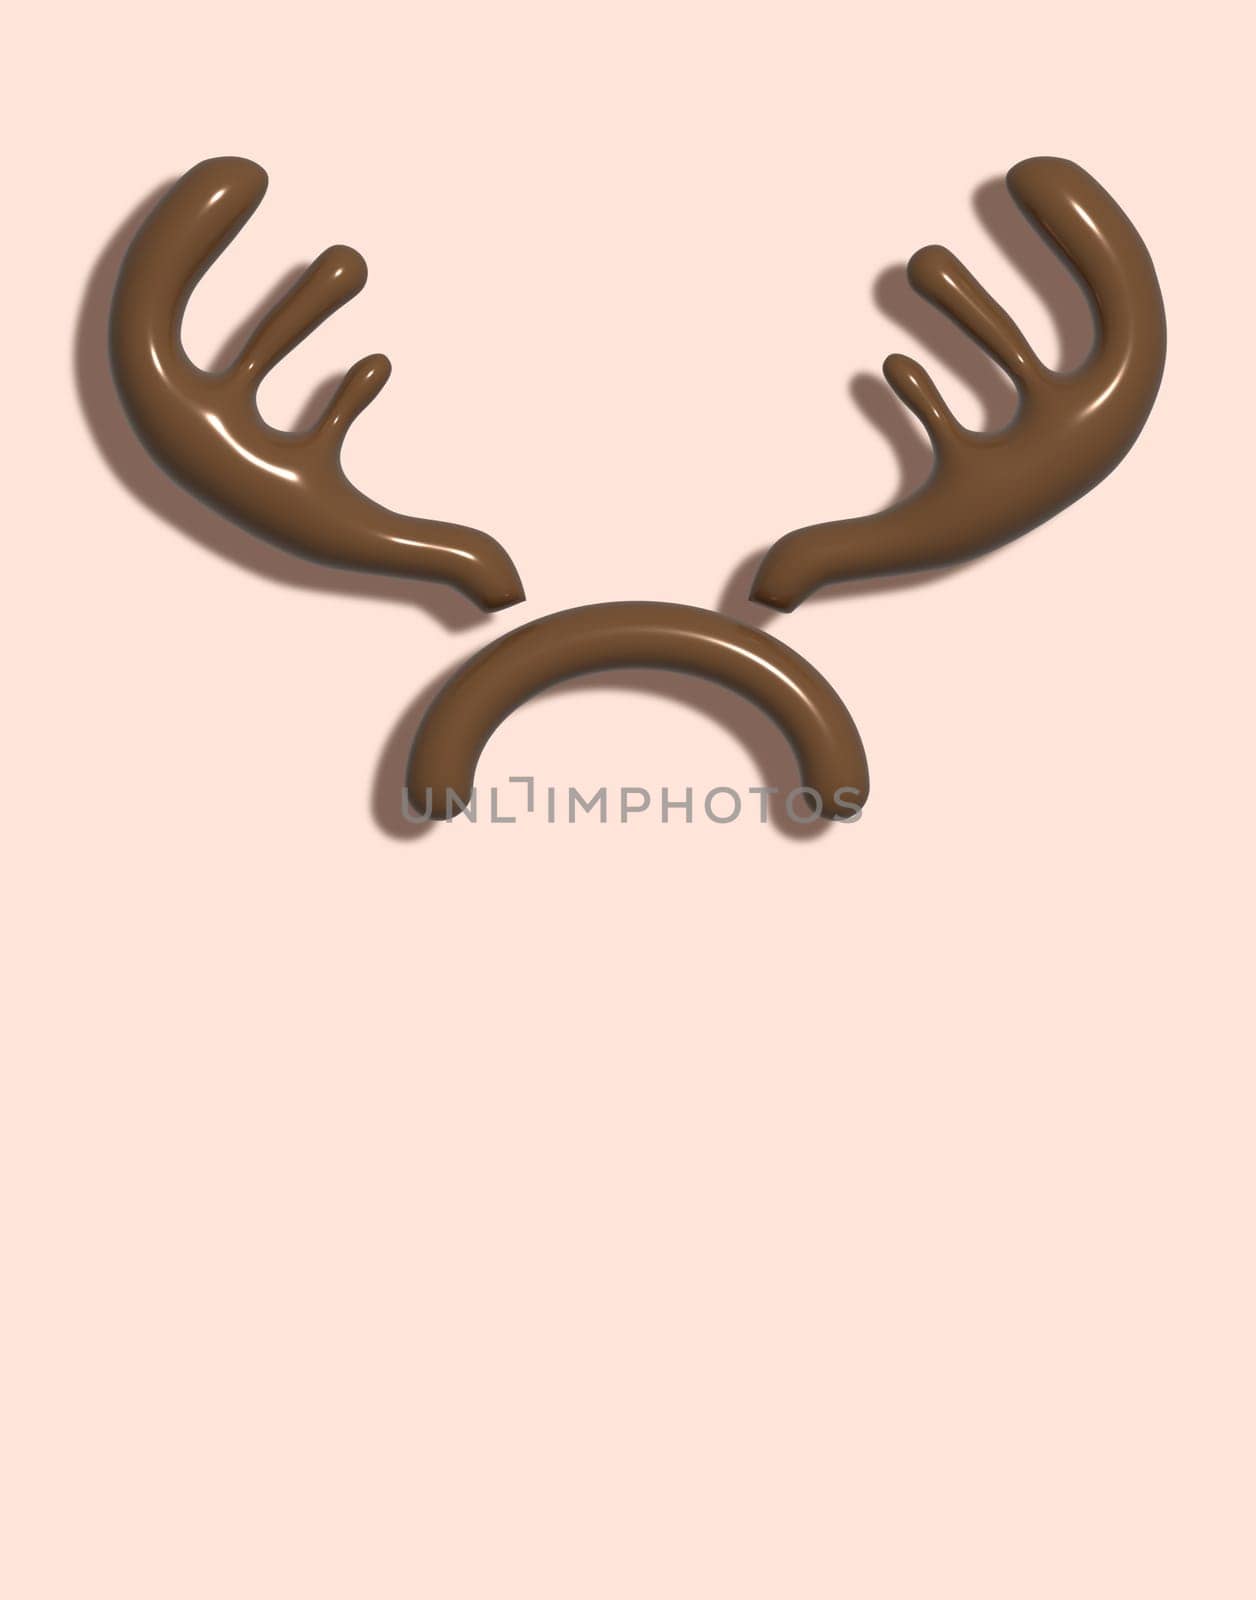 Brown deer antlers on a beige background, 3D rendering illustration by ndanko